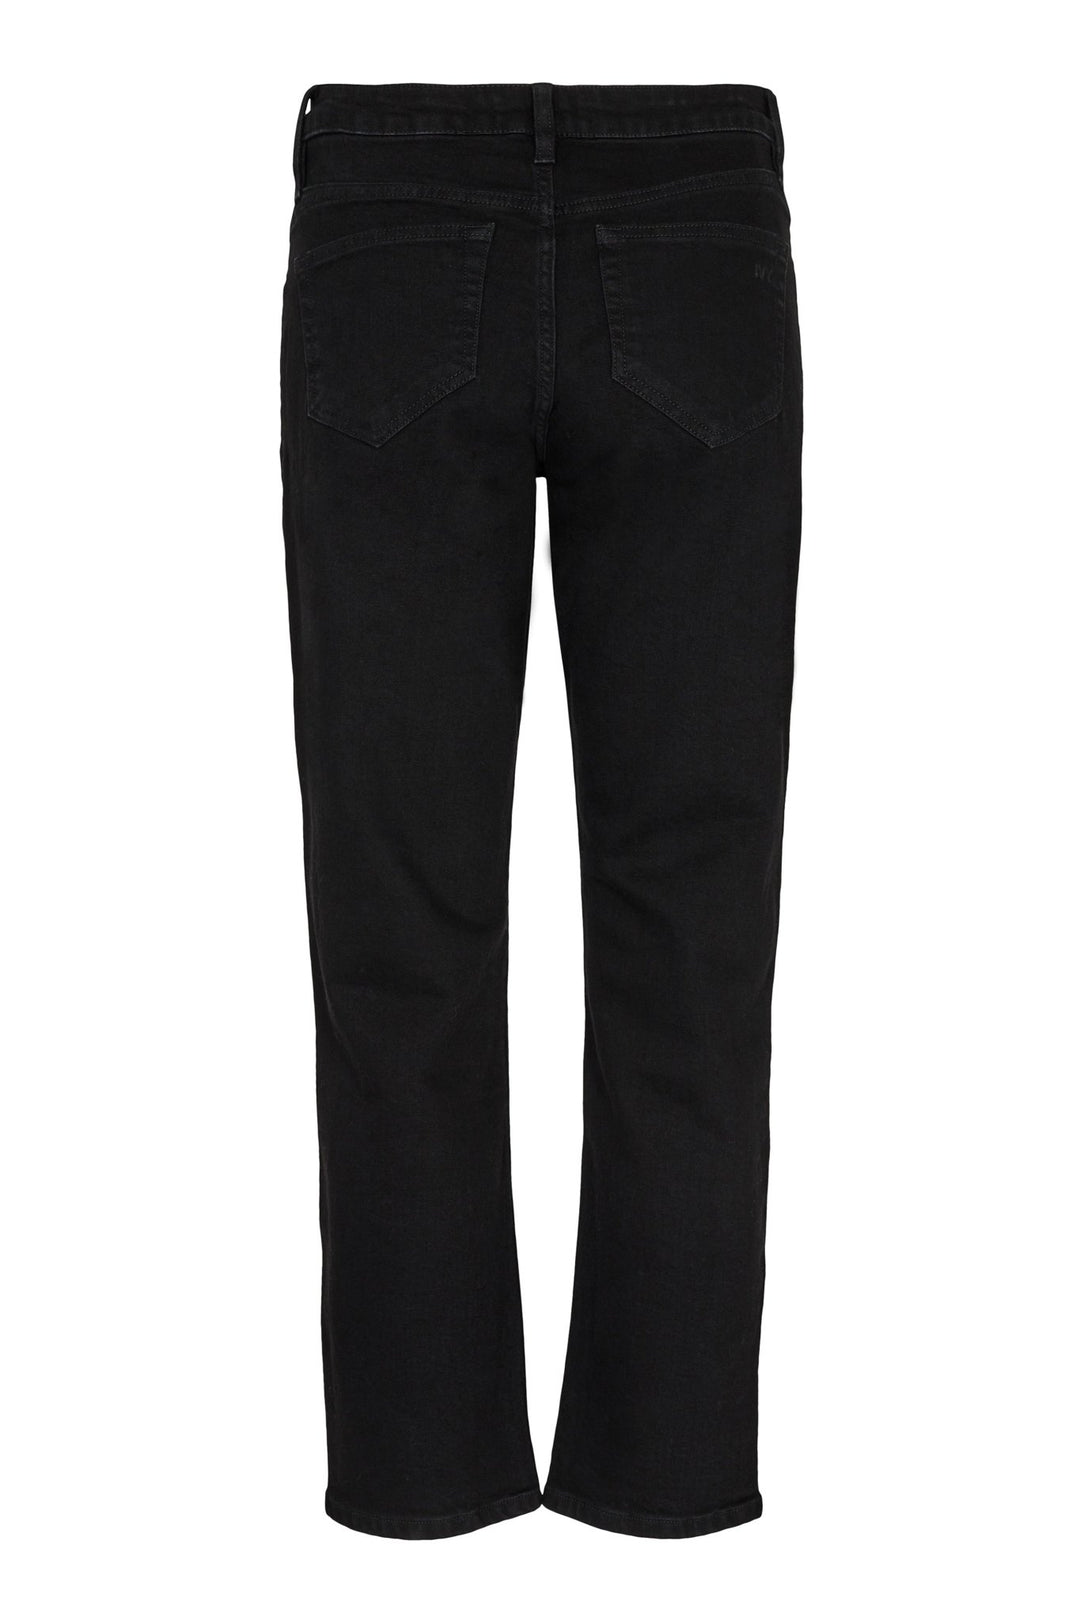 Tonya Jeans Wash Soft Black | Bukser | Smuk - Dameklær på nett